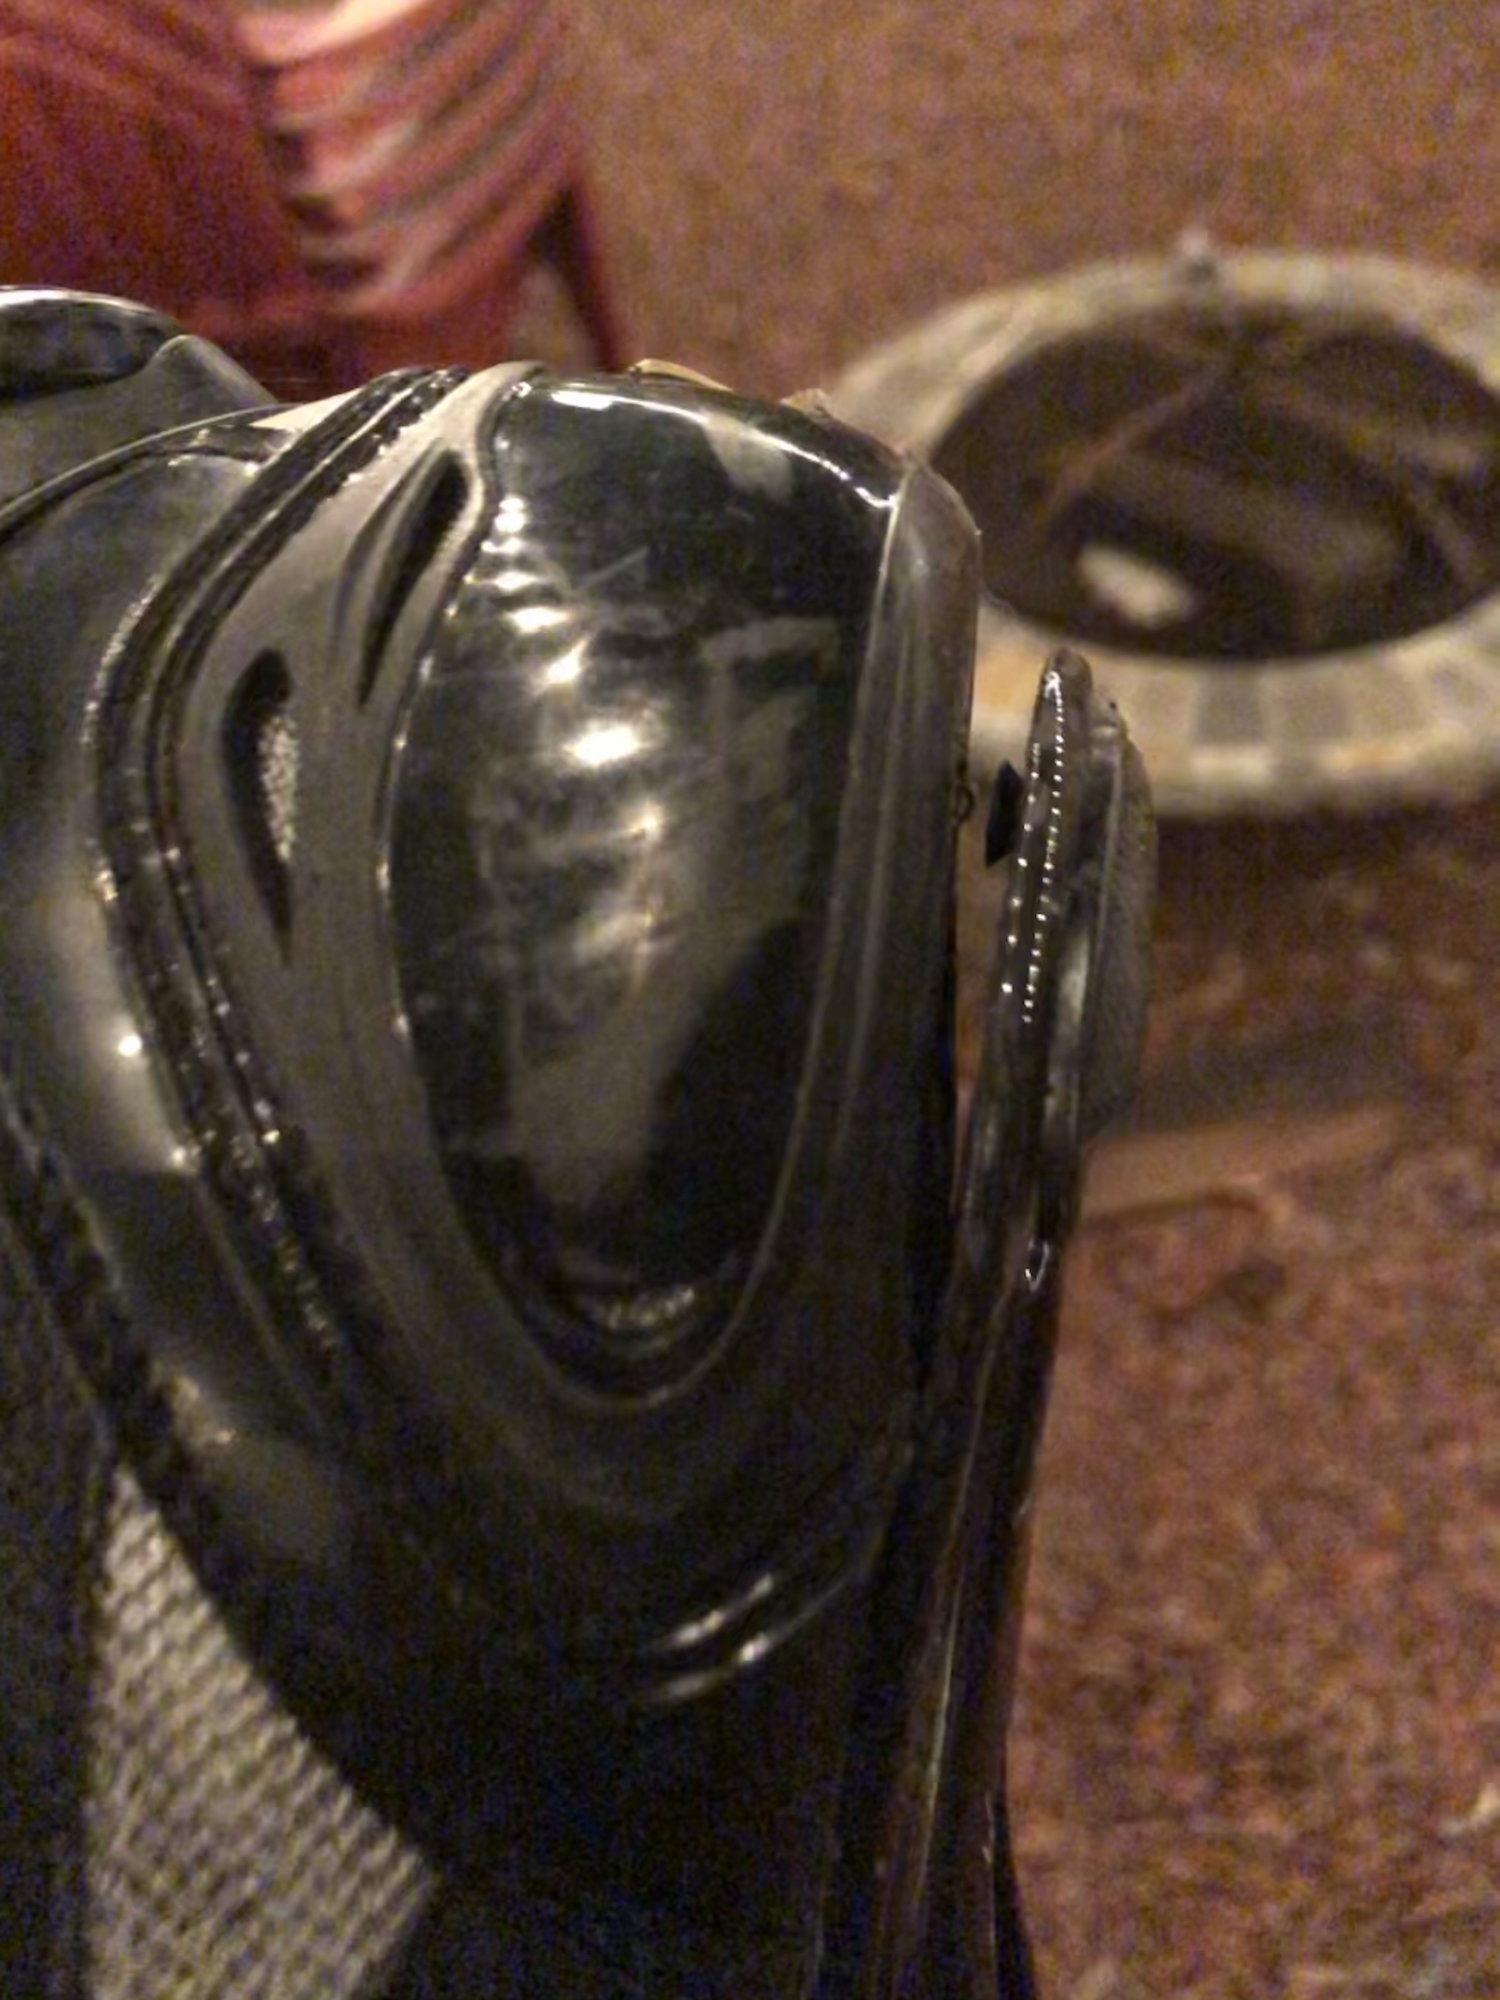 Shoe Repair? - Bike Forums